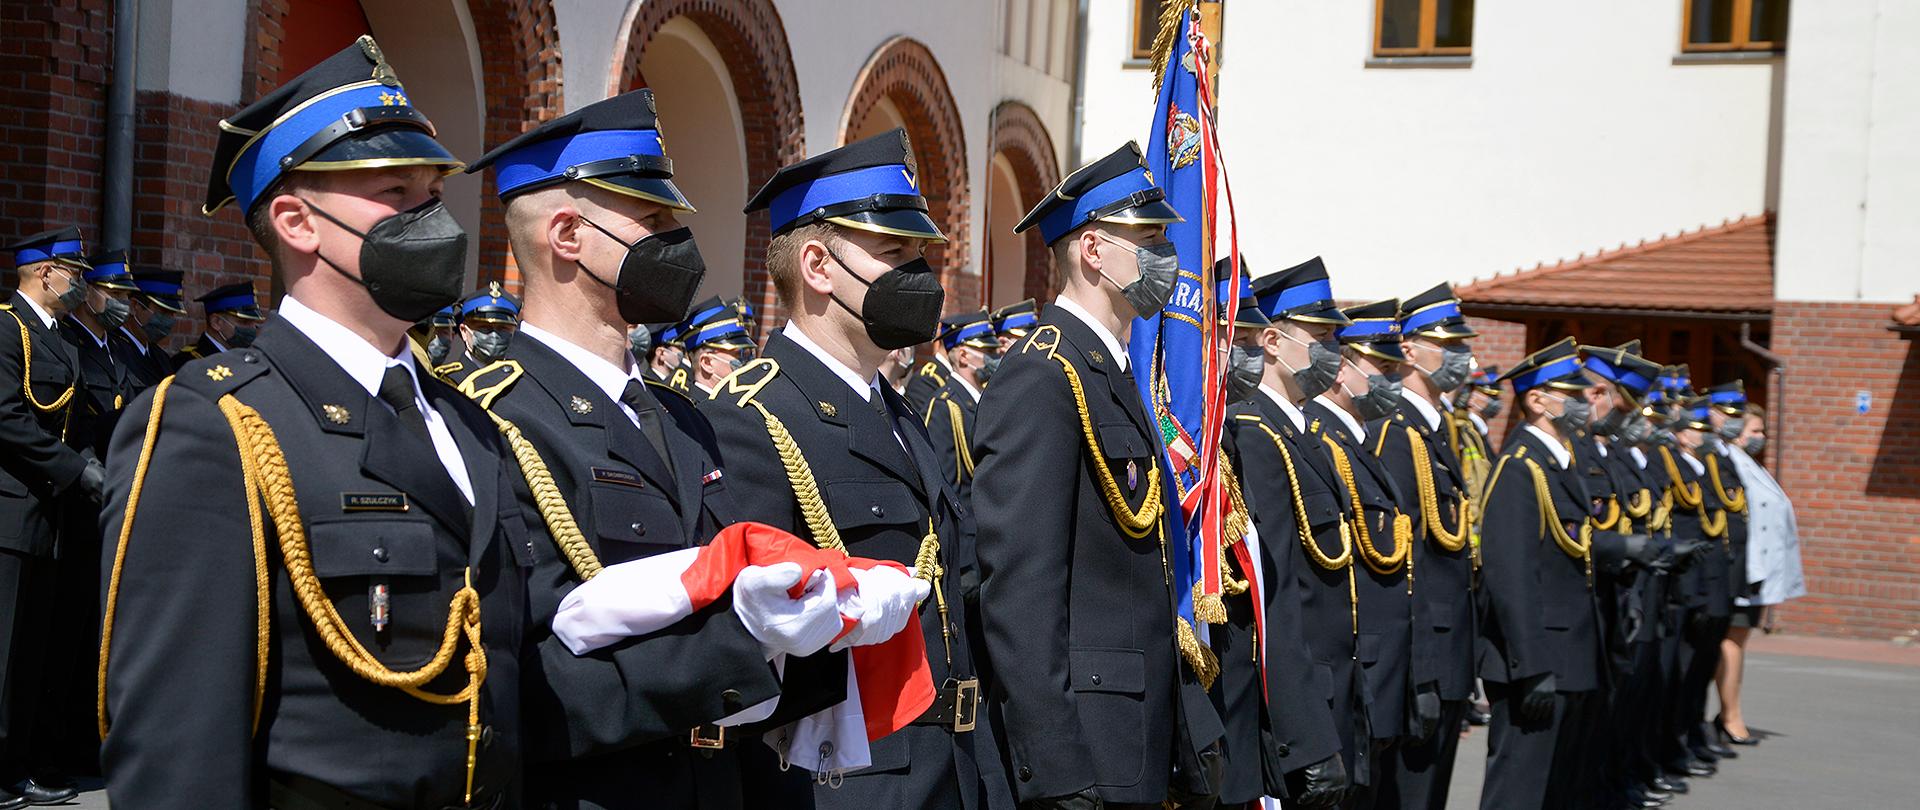 Strażacy stojący w ugrupowaniu rozwiniętym na placu JRG1 w Bydgoszczy, wszyscy mundury wyjściowe i maseczki na twarzy